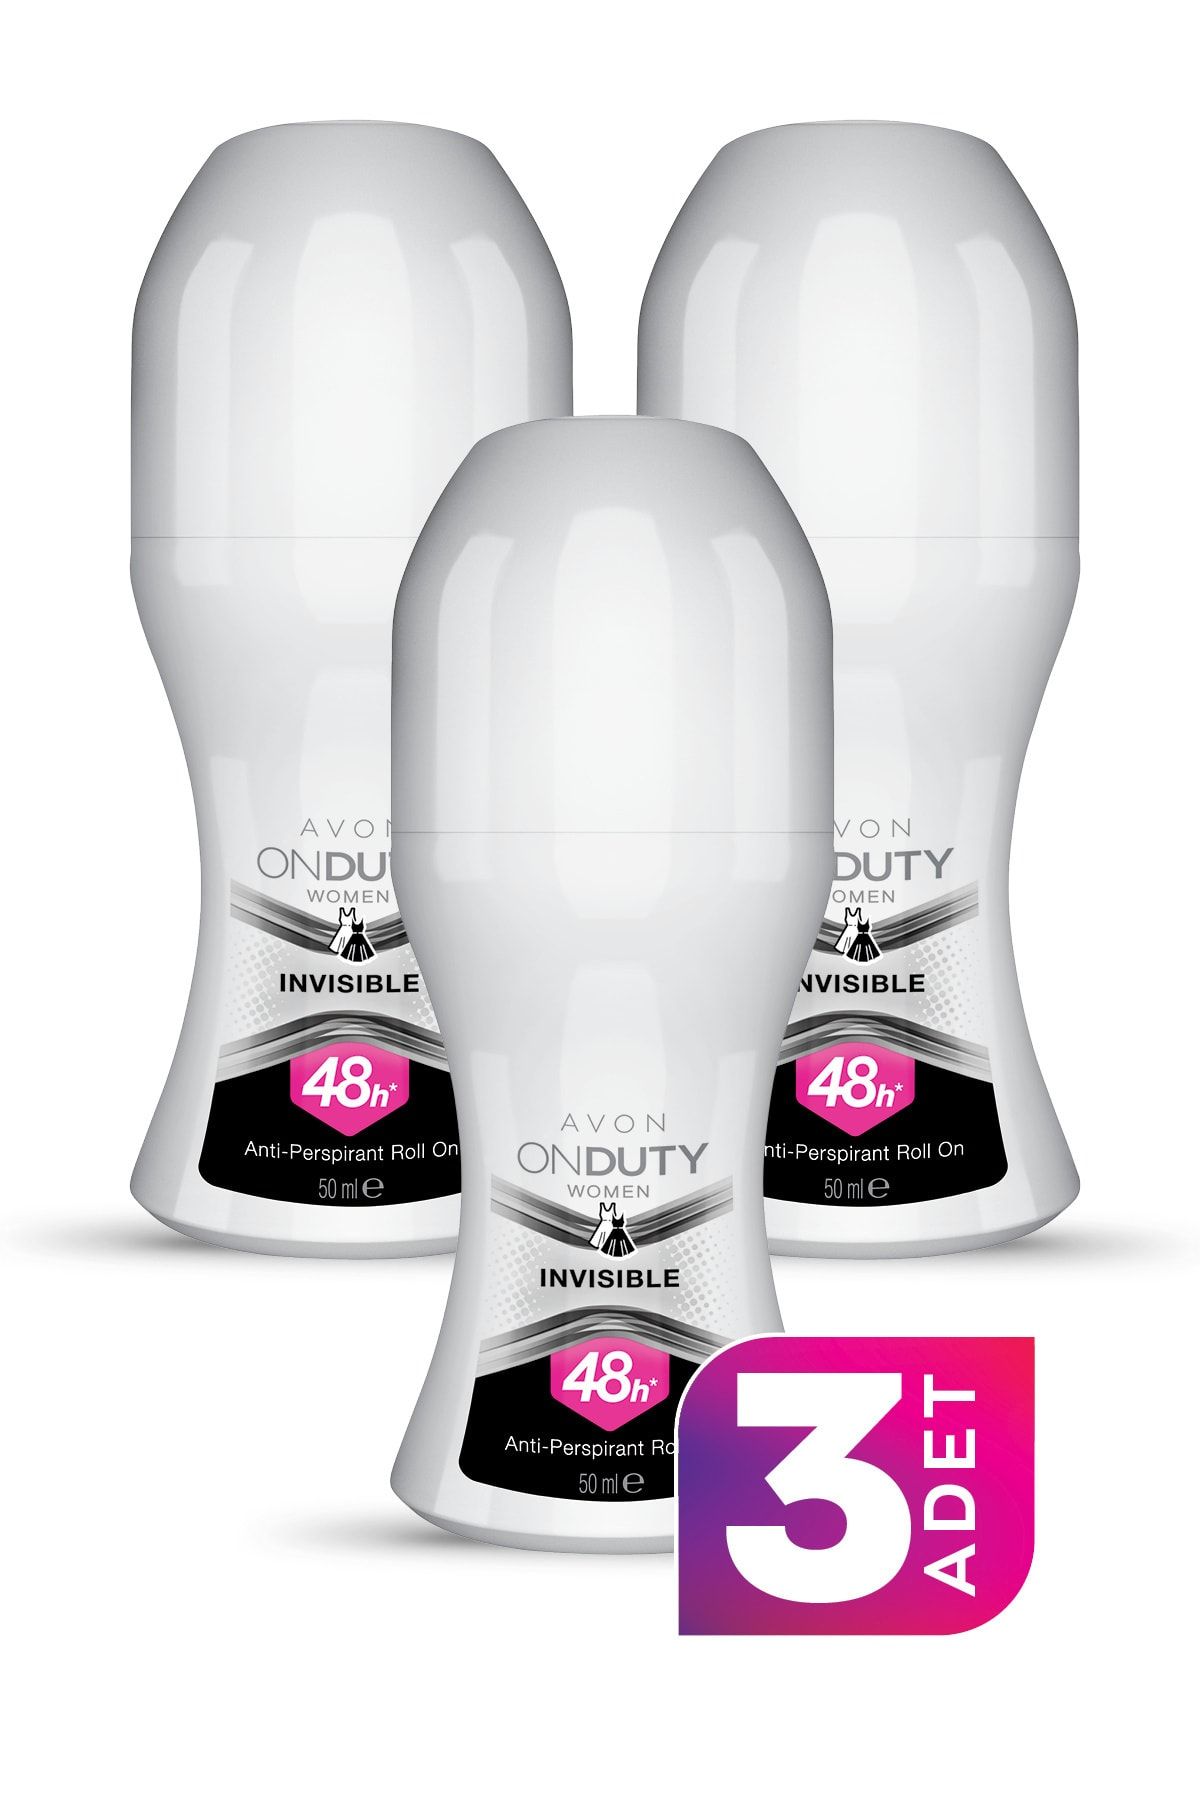 Avon On Duty Invisible Antiperspirant Kadın Roll-On Deodorant 50ml - 3'lü Paket